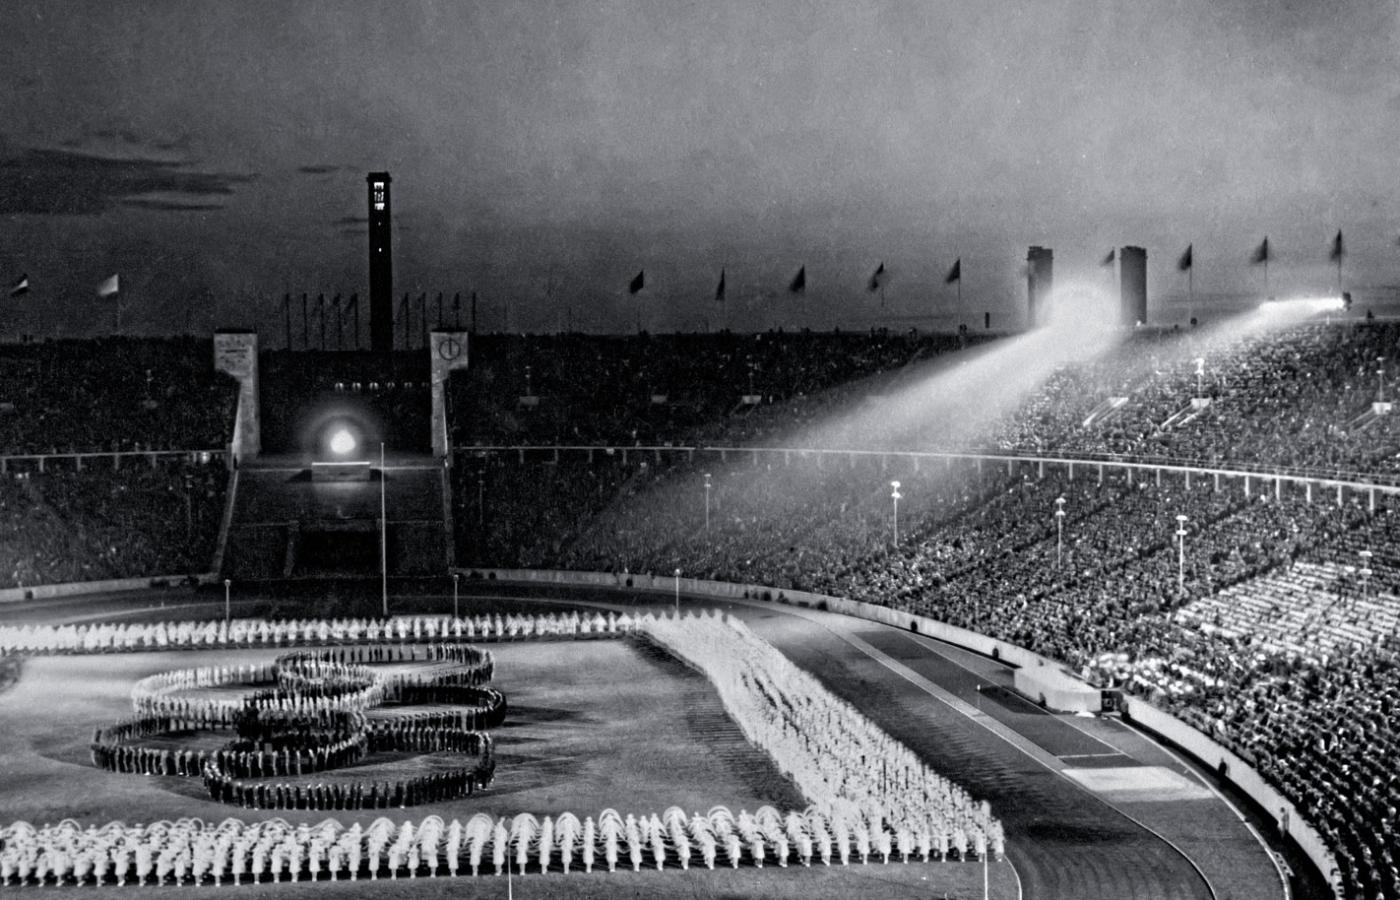 Ceremonia otwarcia igrzysk w Berlinie